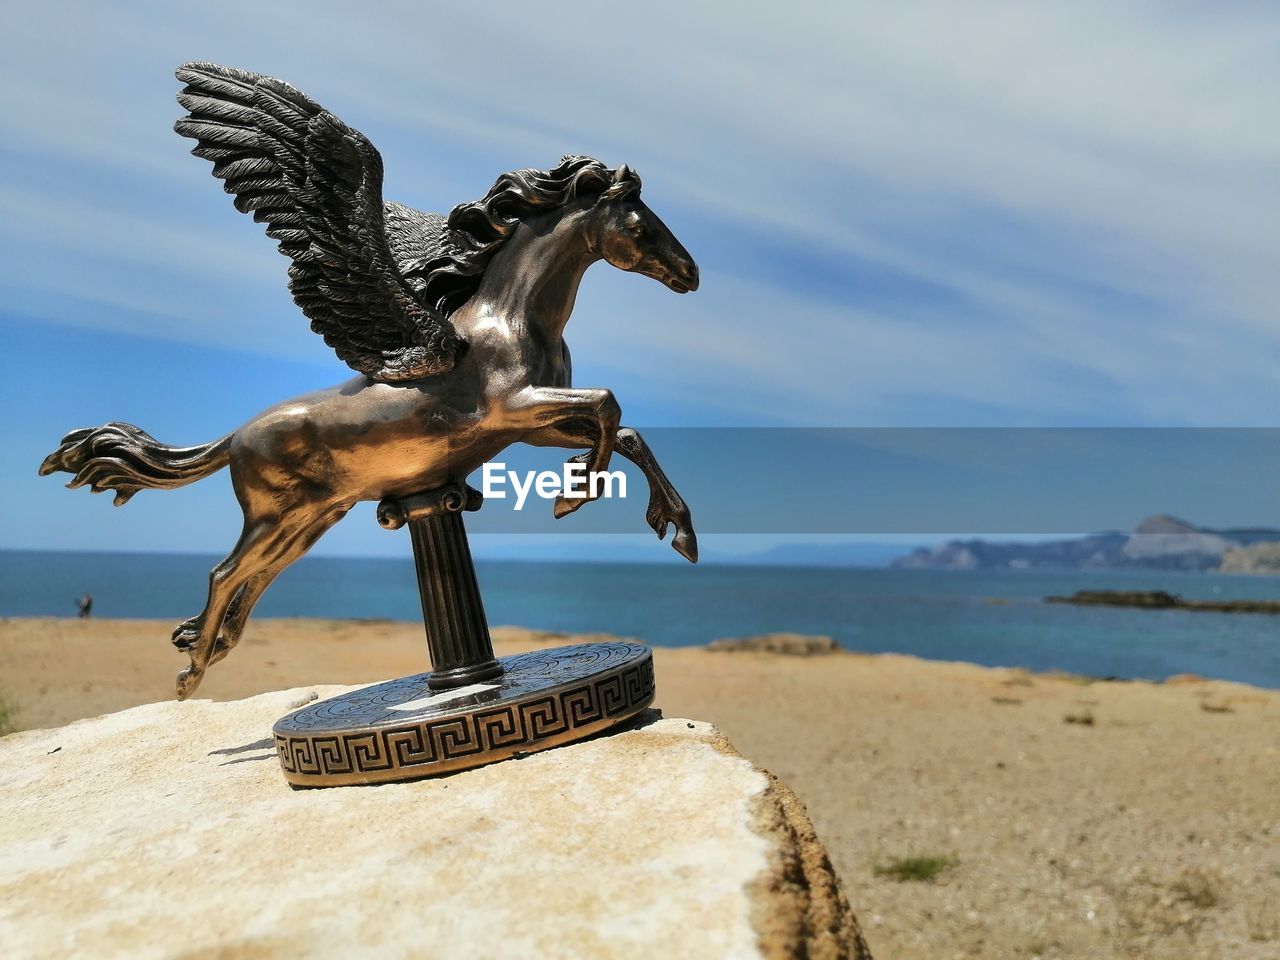 Statue horse on beach against sky